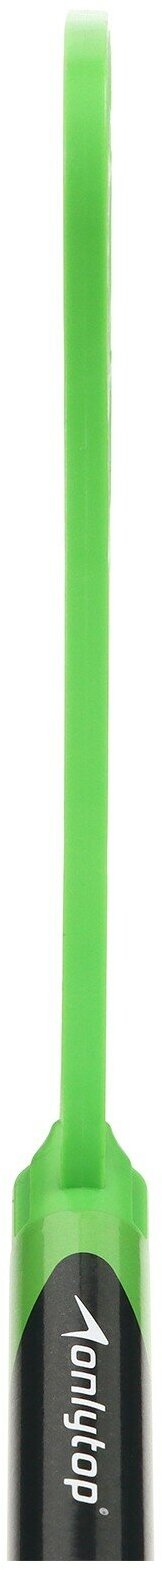 Клюшка для флорбола 65 см, детская, цвета микс